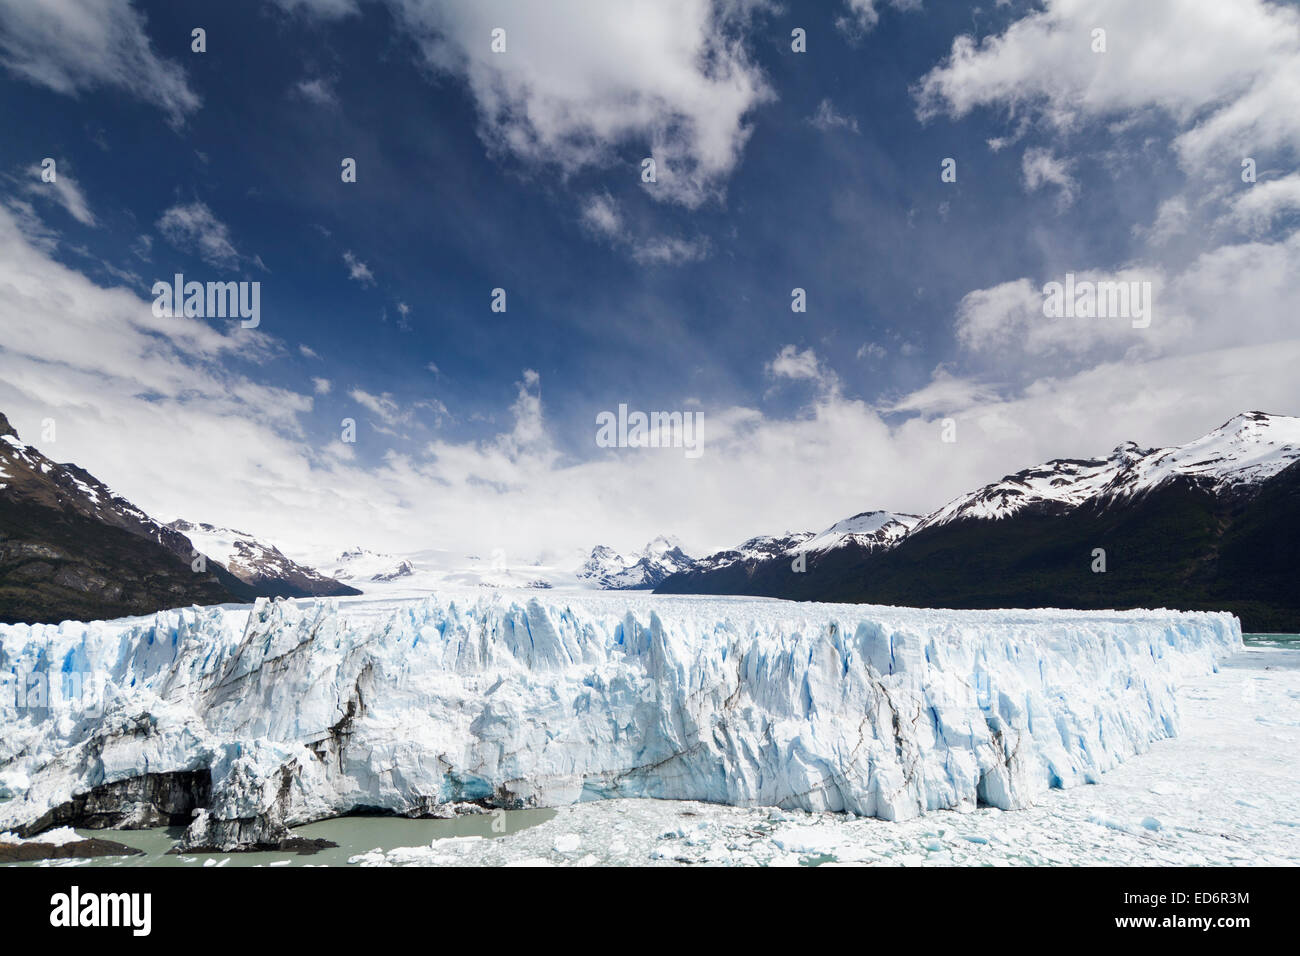 The amazing Perito Moreno Glacier in Patagonia, Argentina Stock Photo